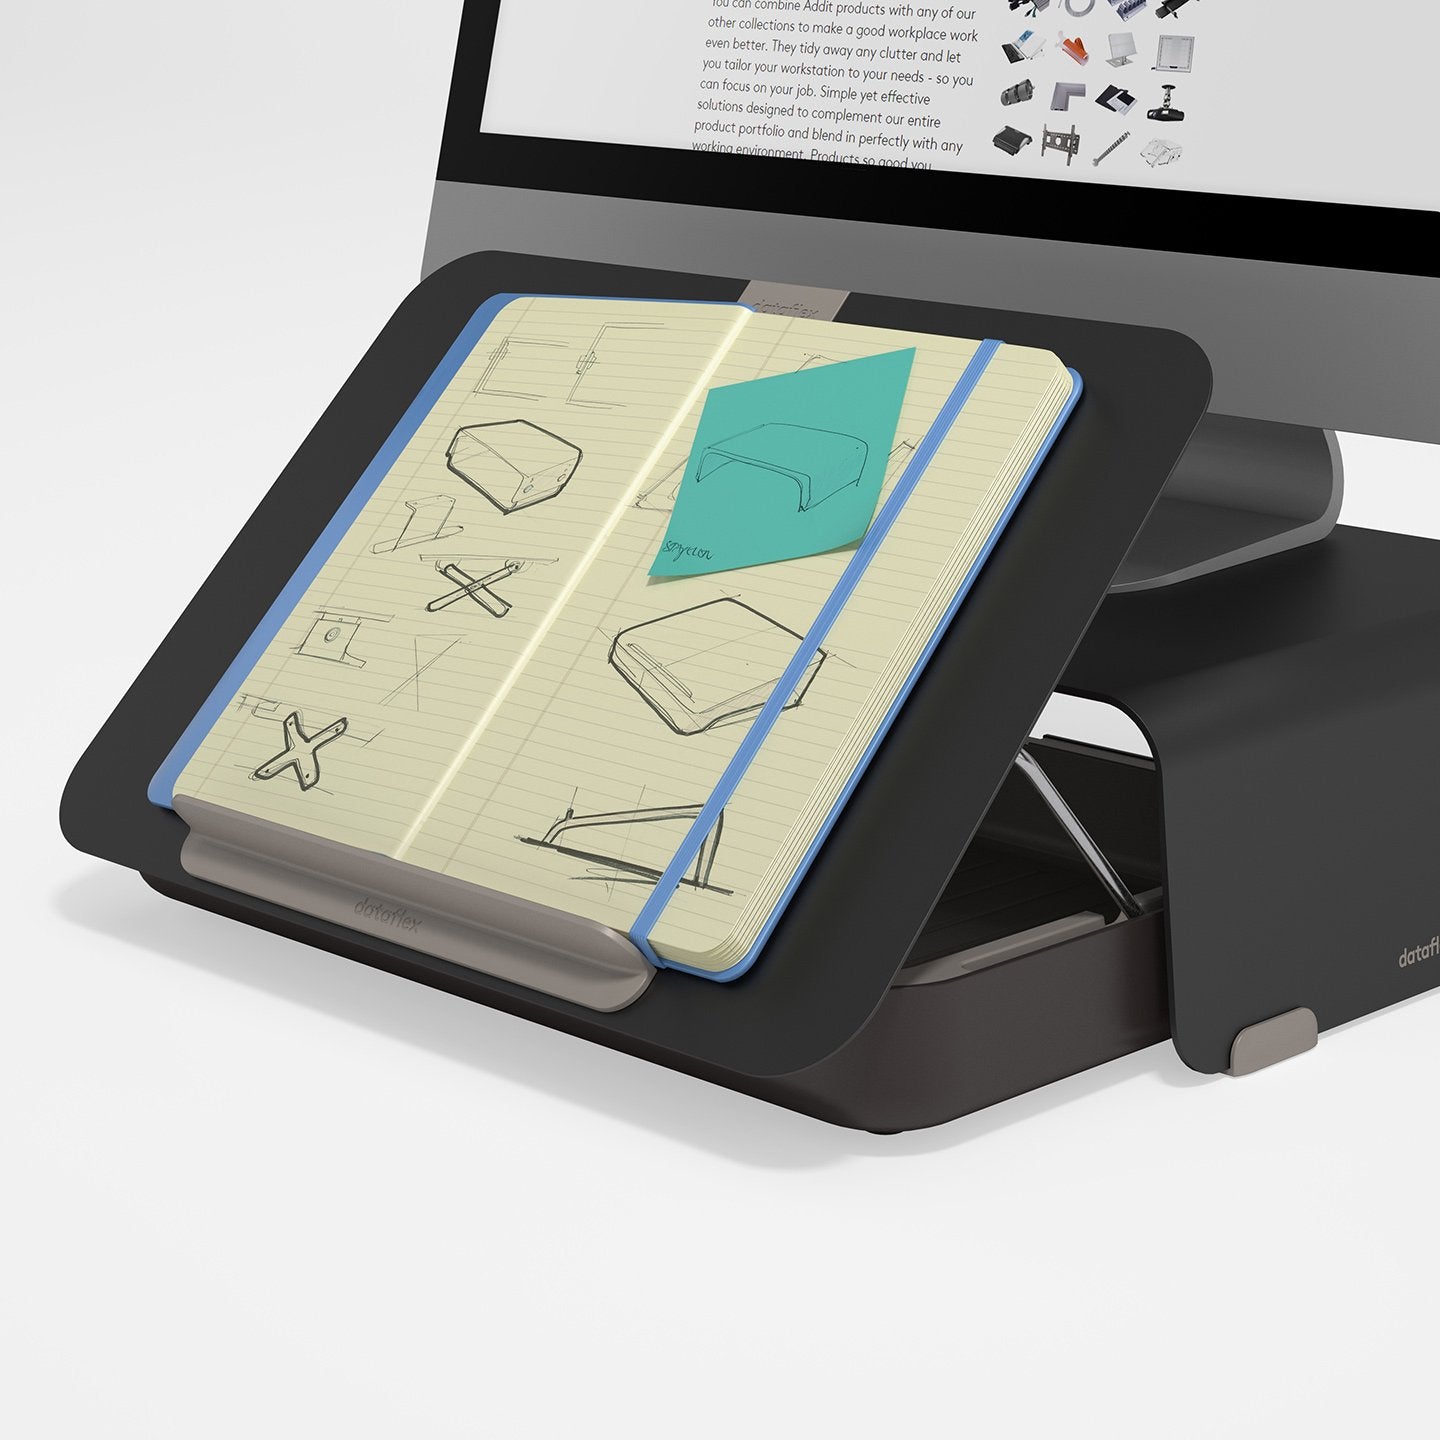 Zwarte ergonomische toolbox met geplaatste ipad  uit de Addit Bento® collectie van Dataflex